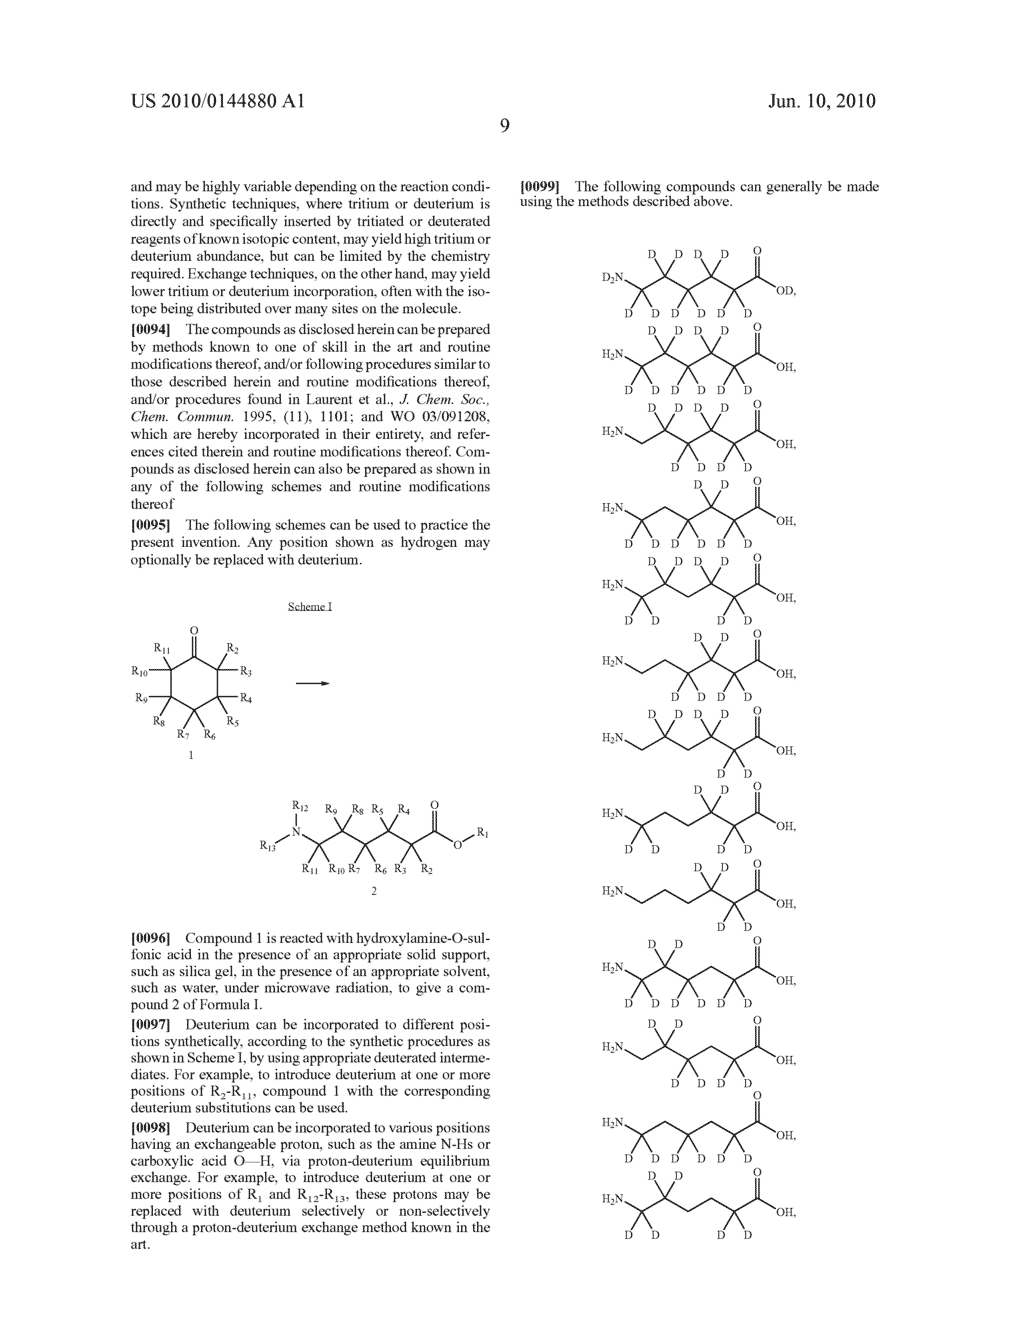 AMINO ACID INHIBITORS OF PLASMIN - diagram, schematic, and image 10